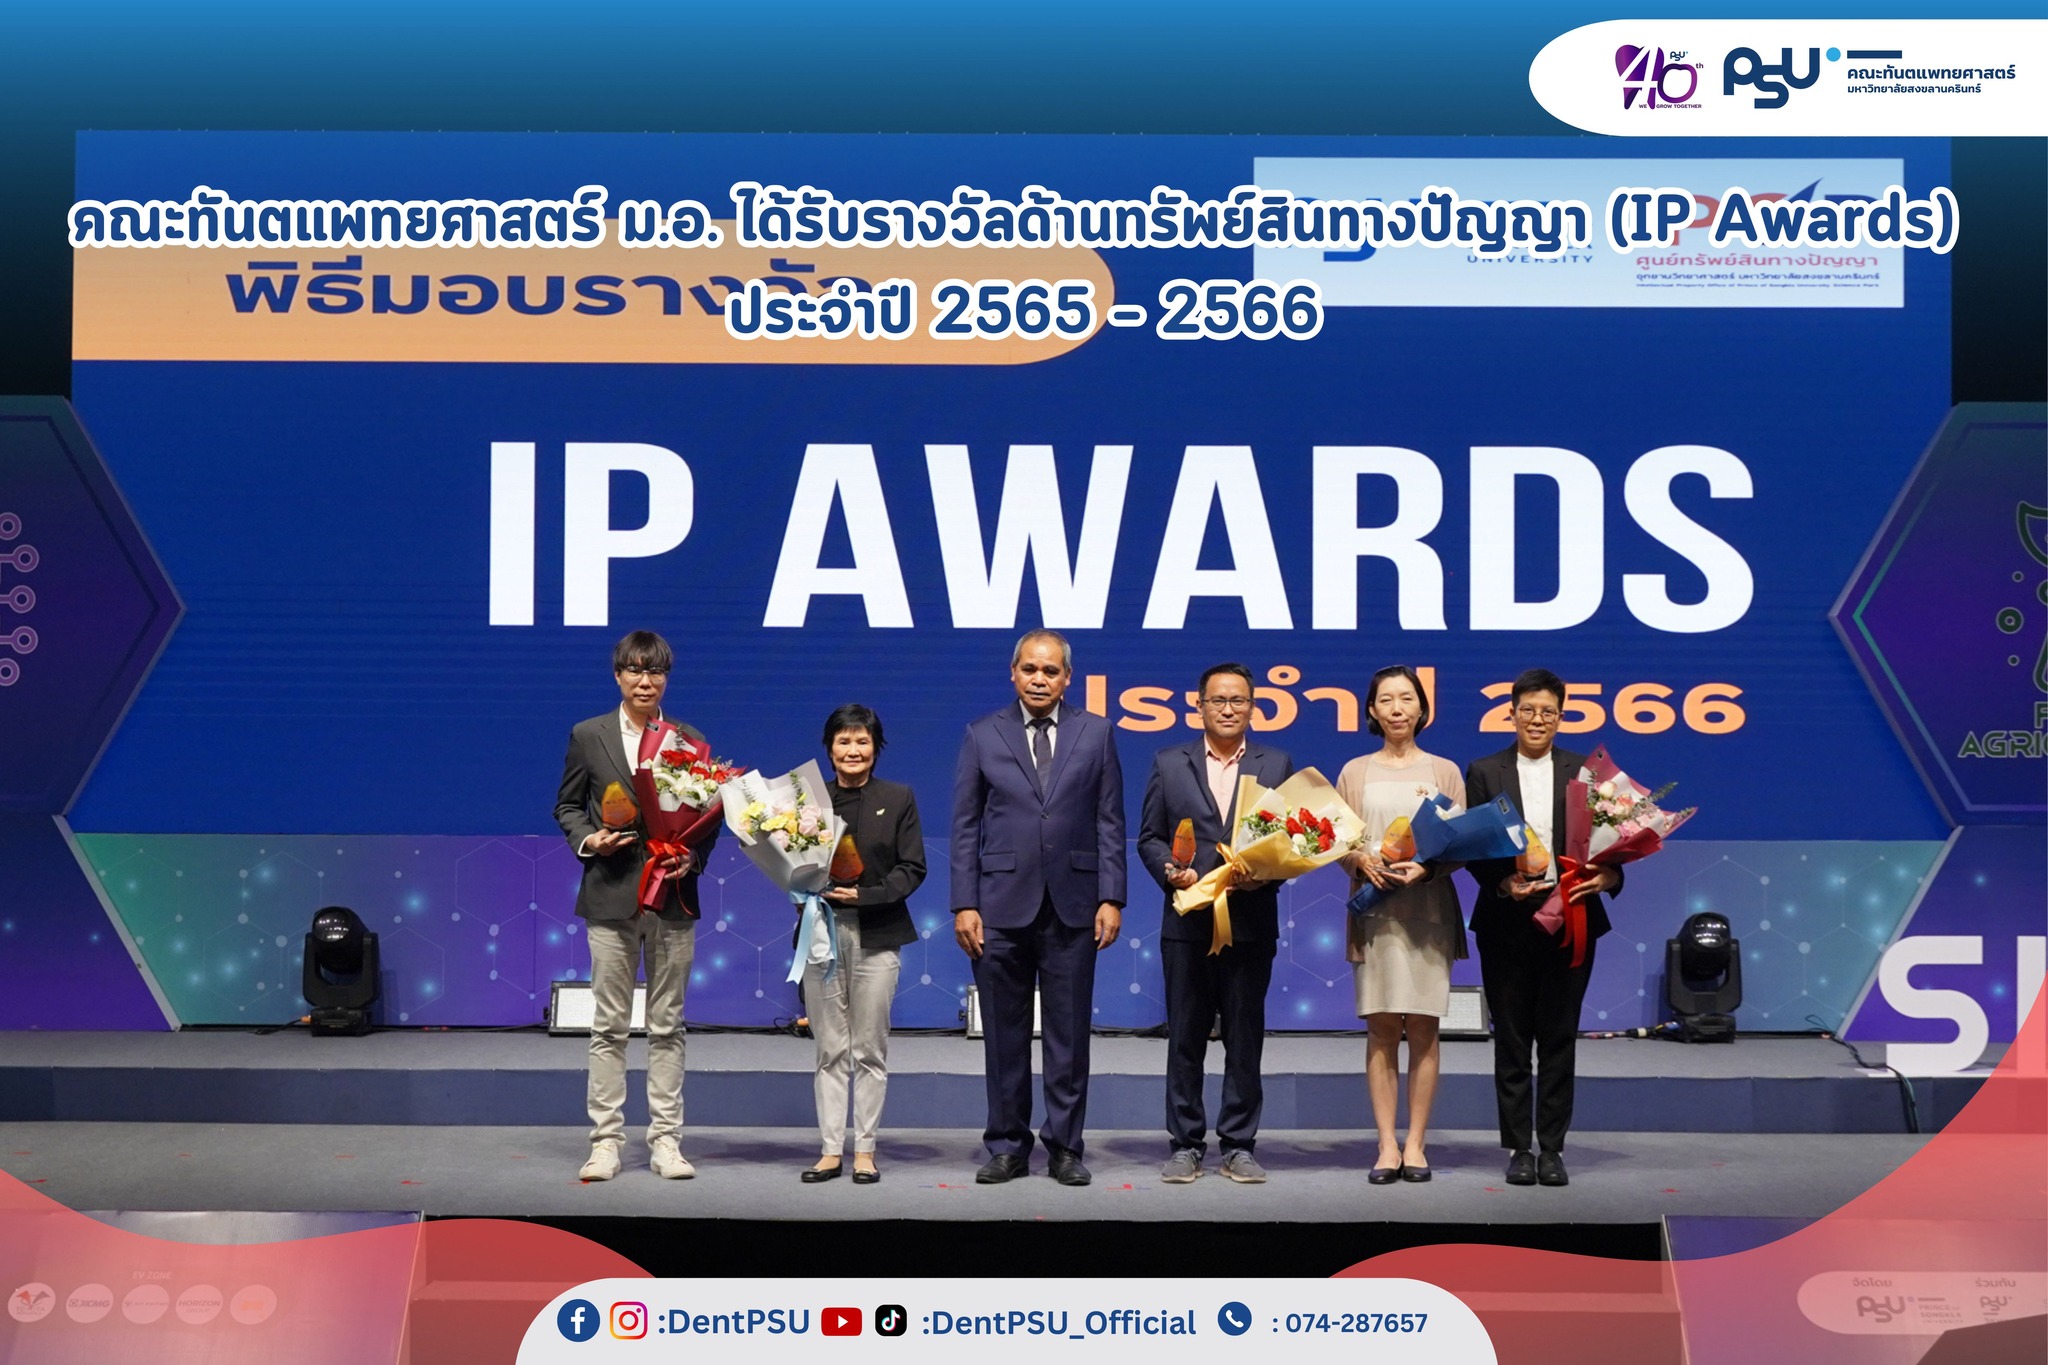 ขอแสดงความยินดีกับรางวัลในงานมอบรางวัลด้านทรัพย์สินทางปัญญา (IP Awards) ประจำปี 2565 – 2566